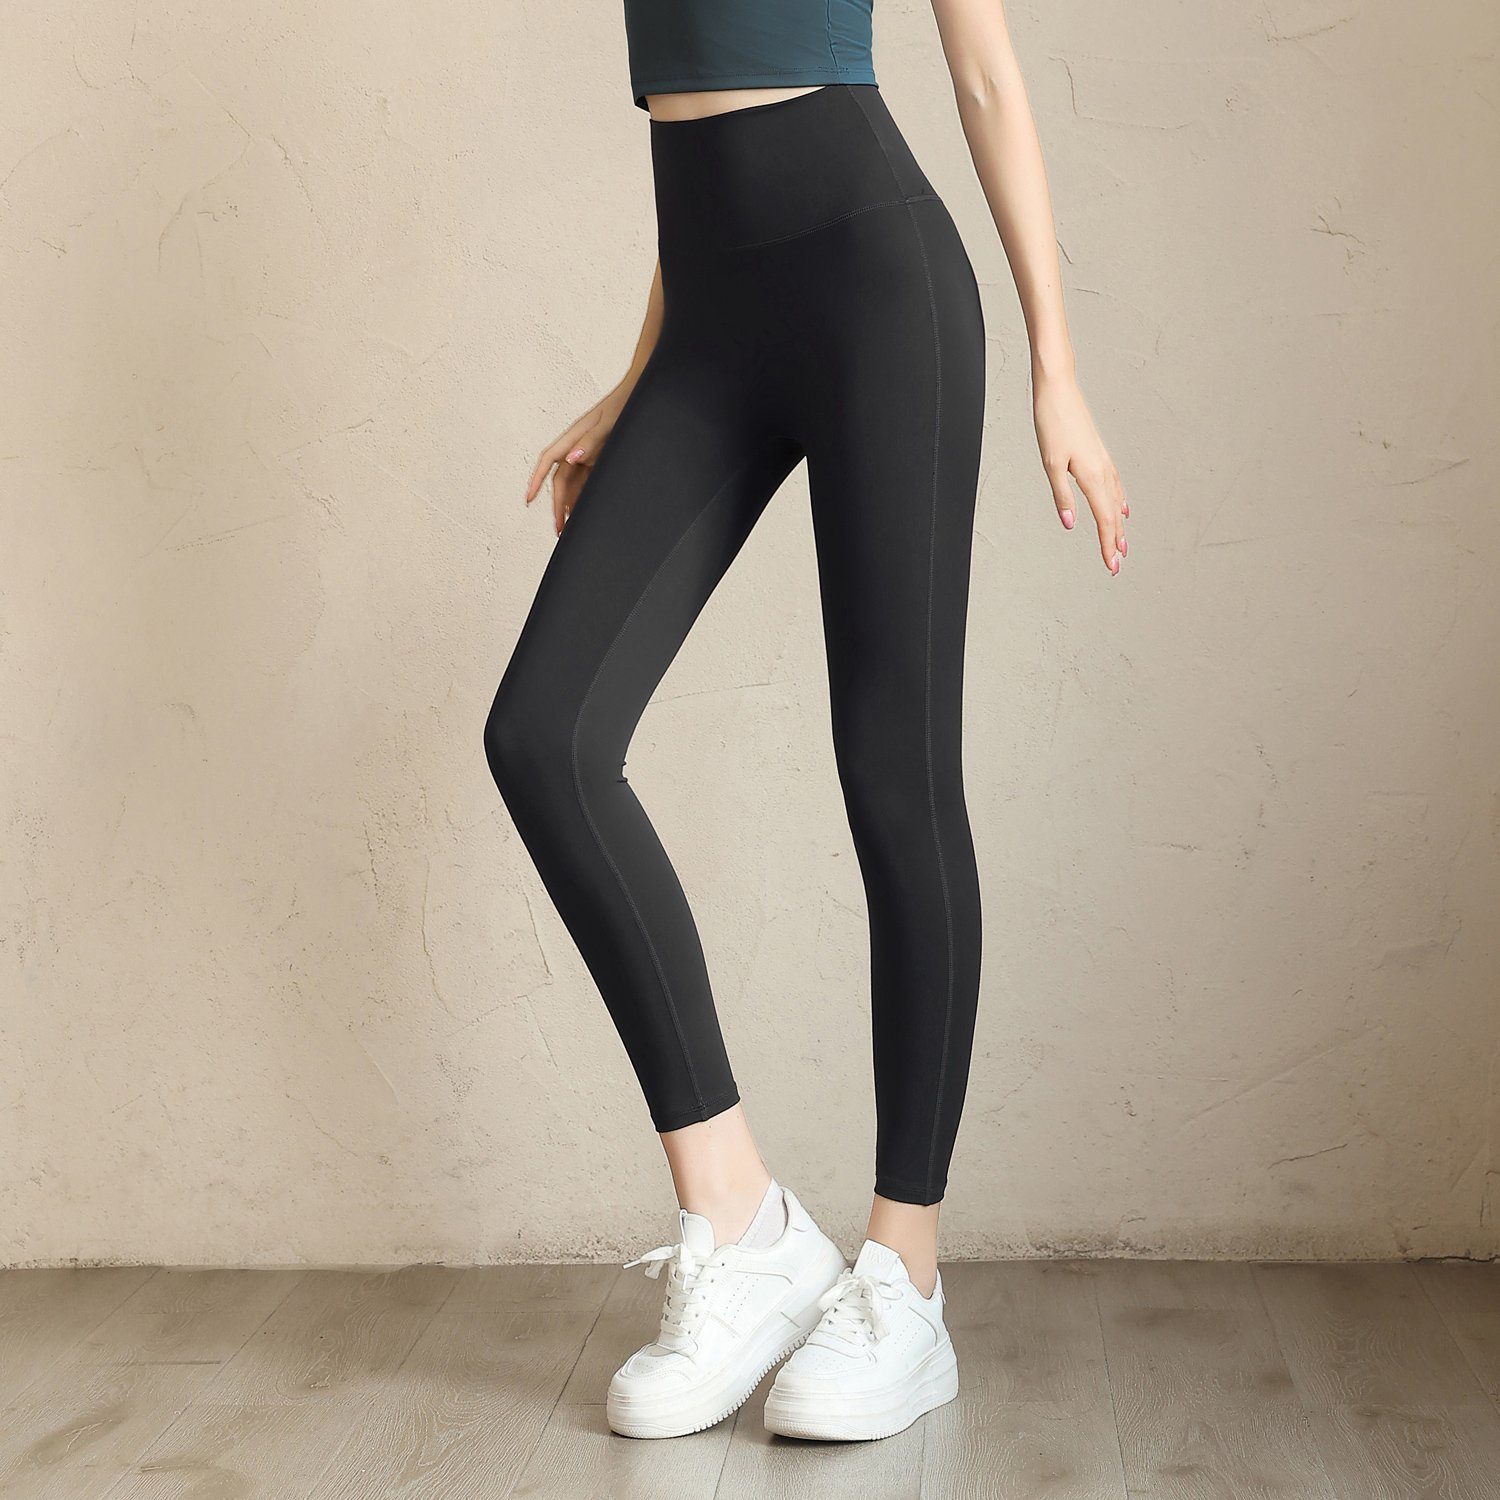 Fity Leggings Sport-Leggings für Damen mit hohem Bund & nahtlosem Design